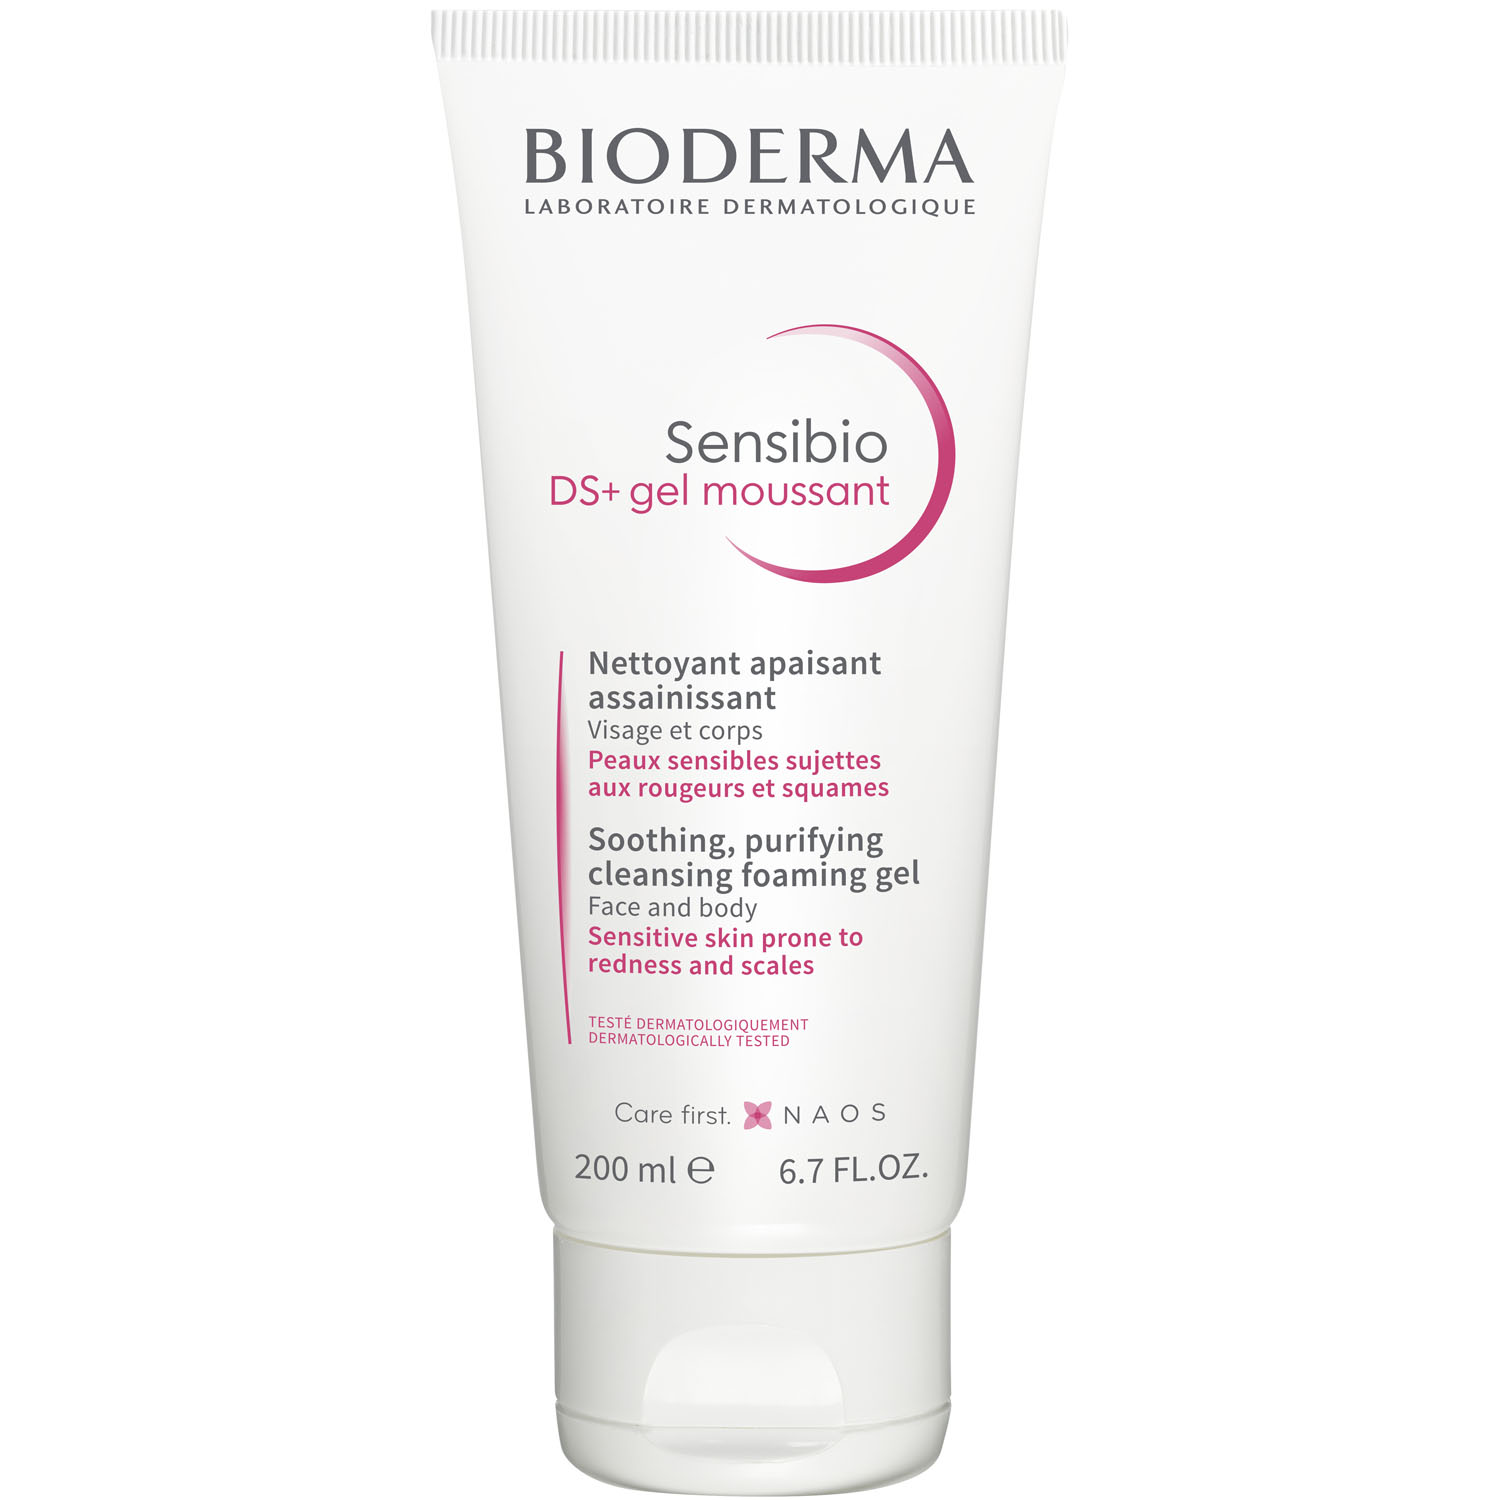 Bioderma Очищающий гель для кожи с покраснениями и шелушениями DS+, 200 мл (Bioderma, Sensibio) очищающий гель bioderma sensibio ds 200 мл